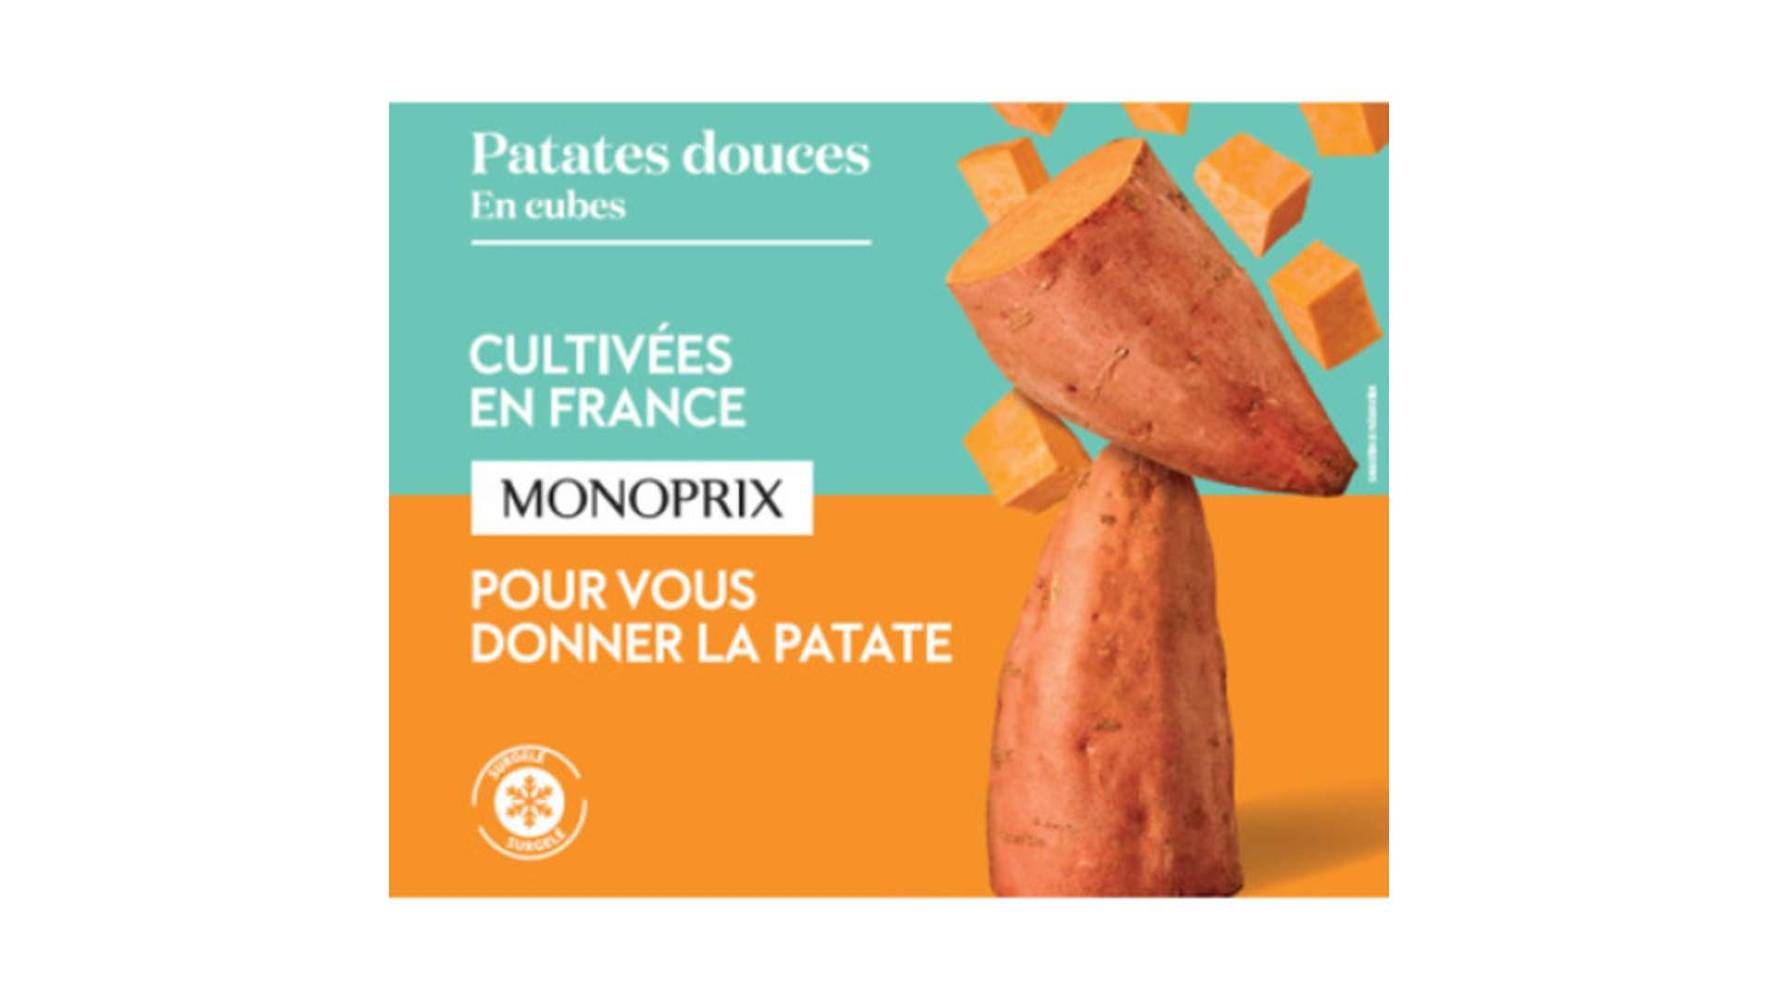 Monoprix - Patates douces en cubes